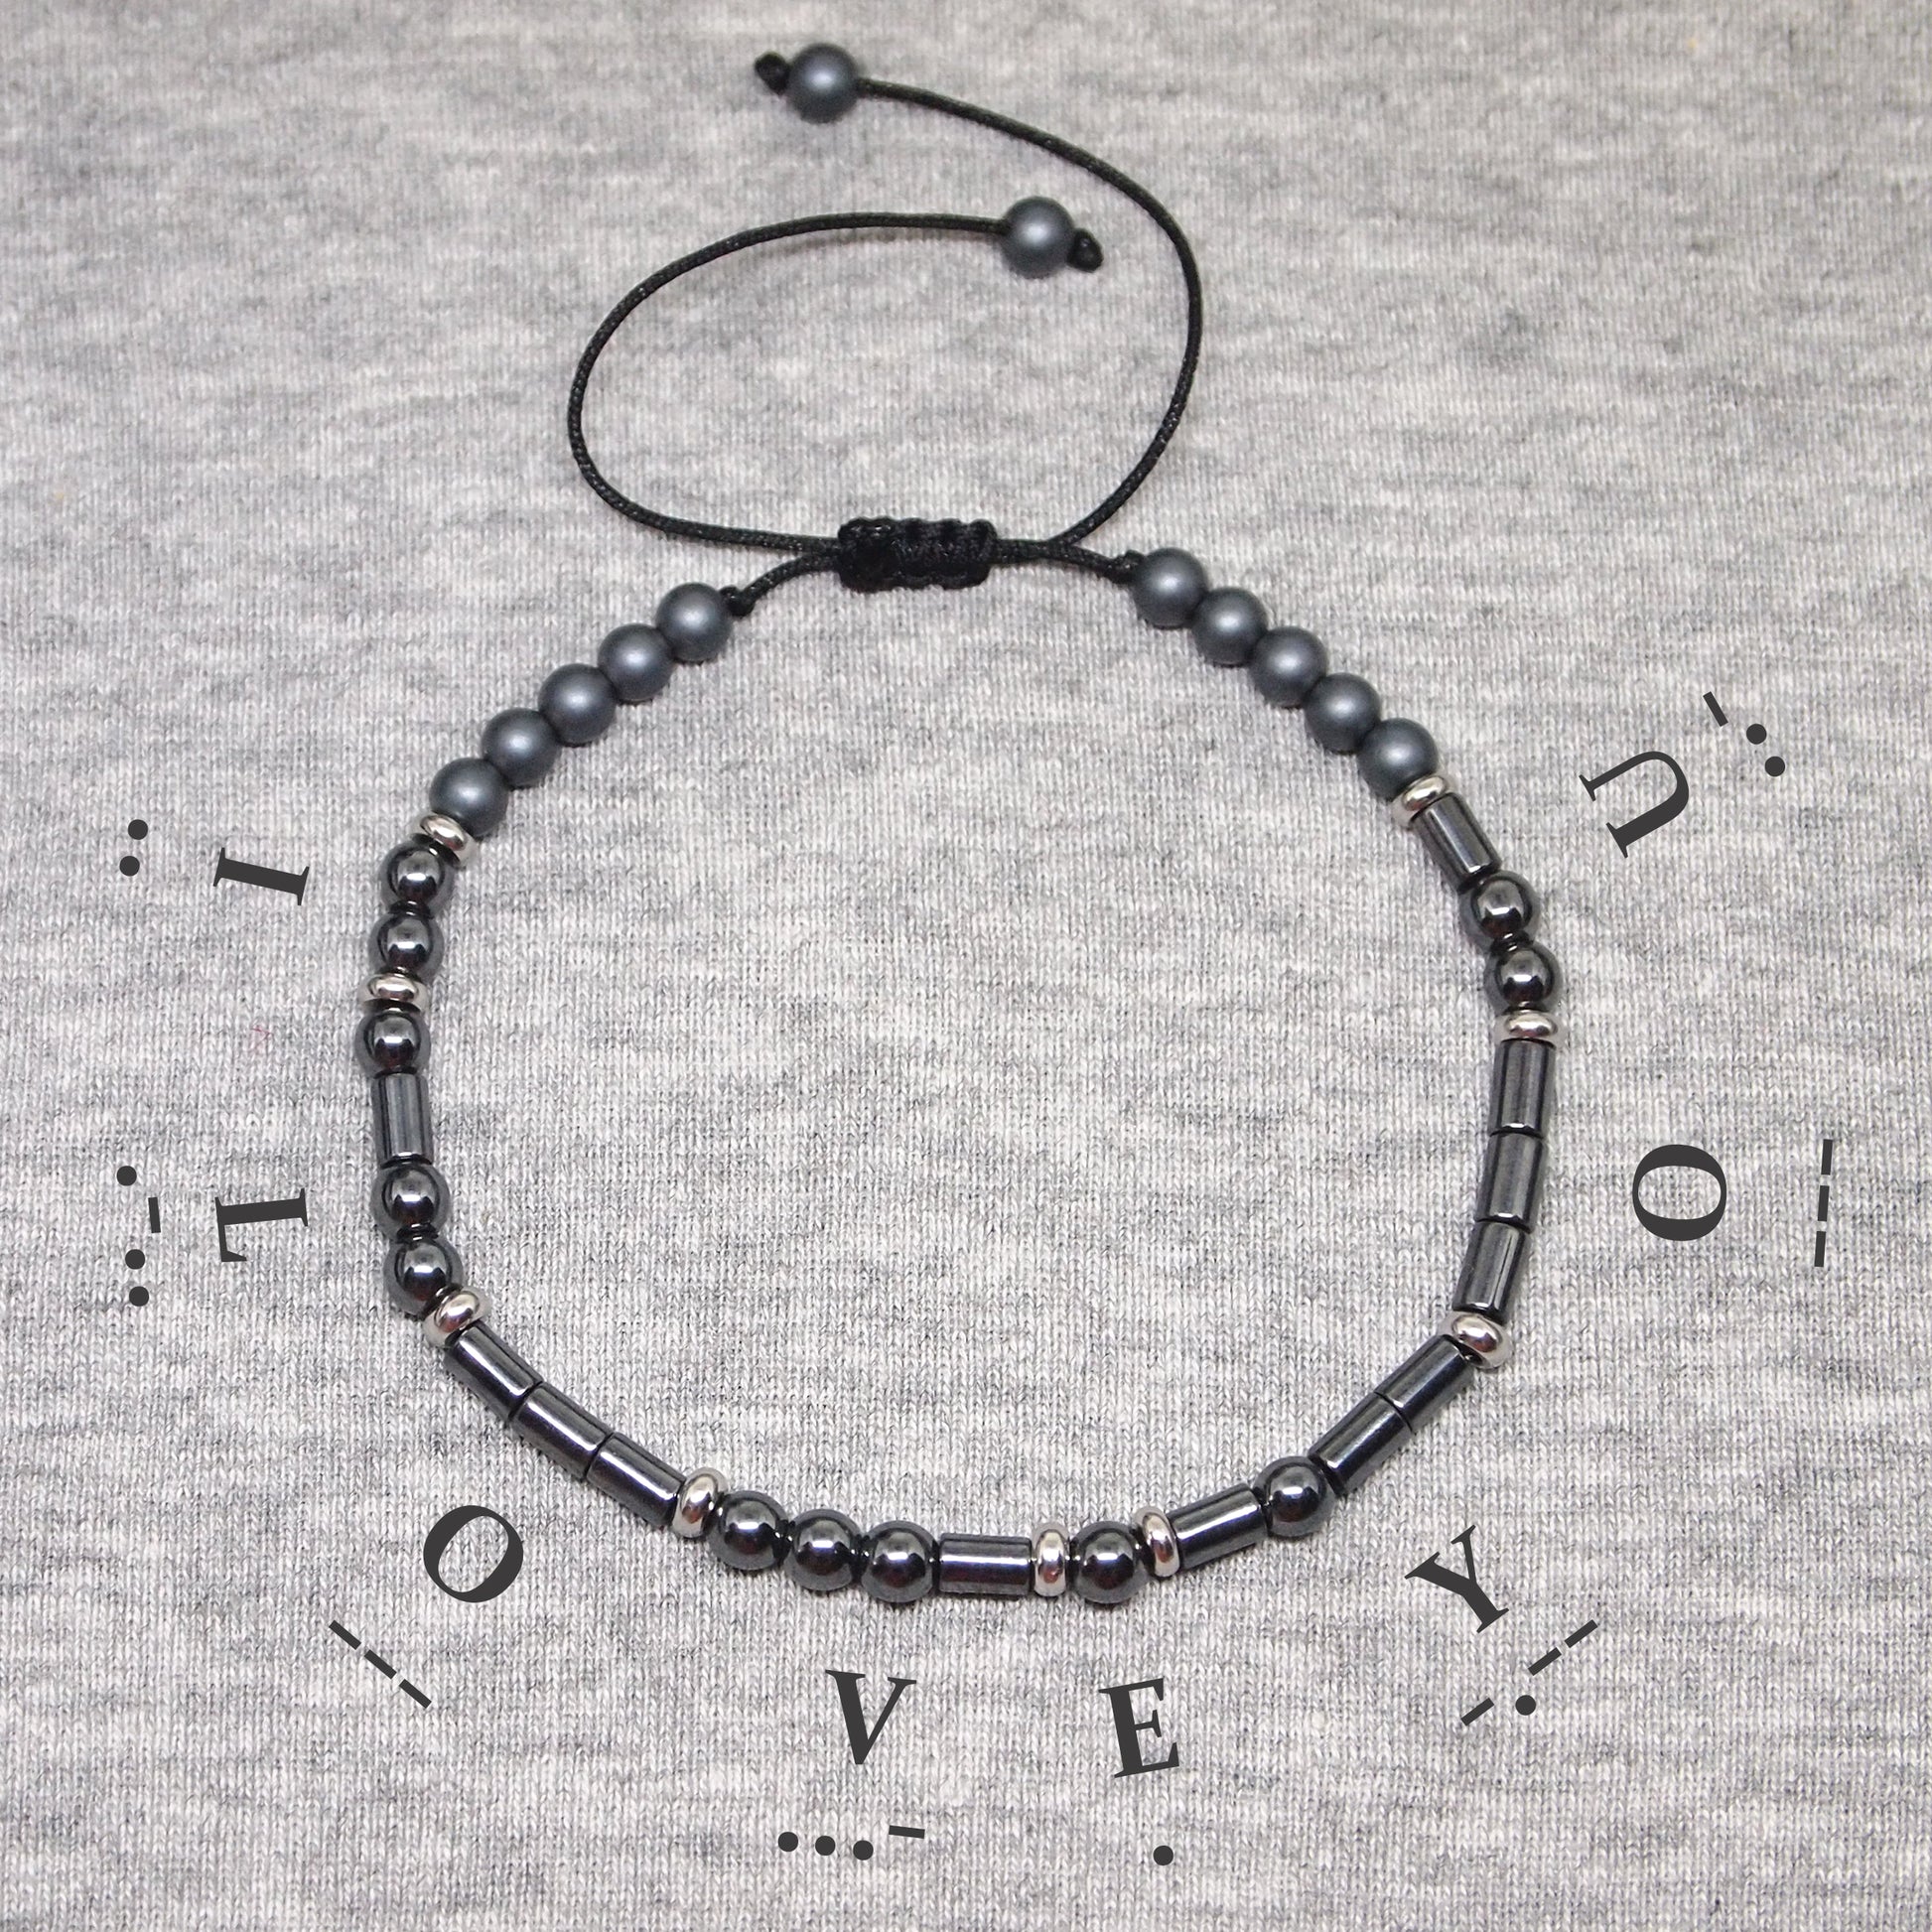 I Love you morse code bracelet, gift for husband